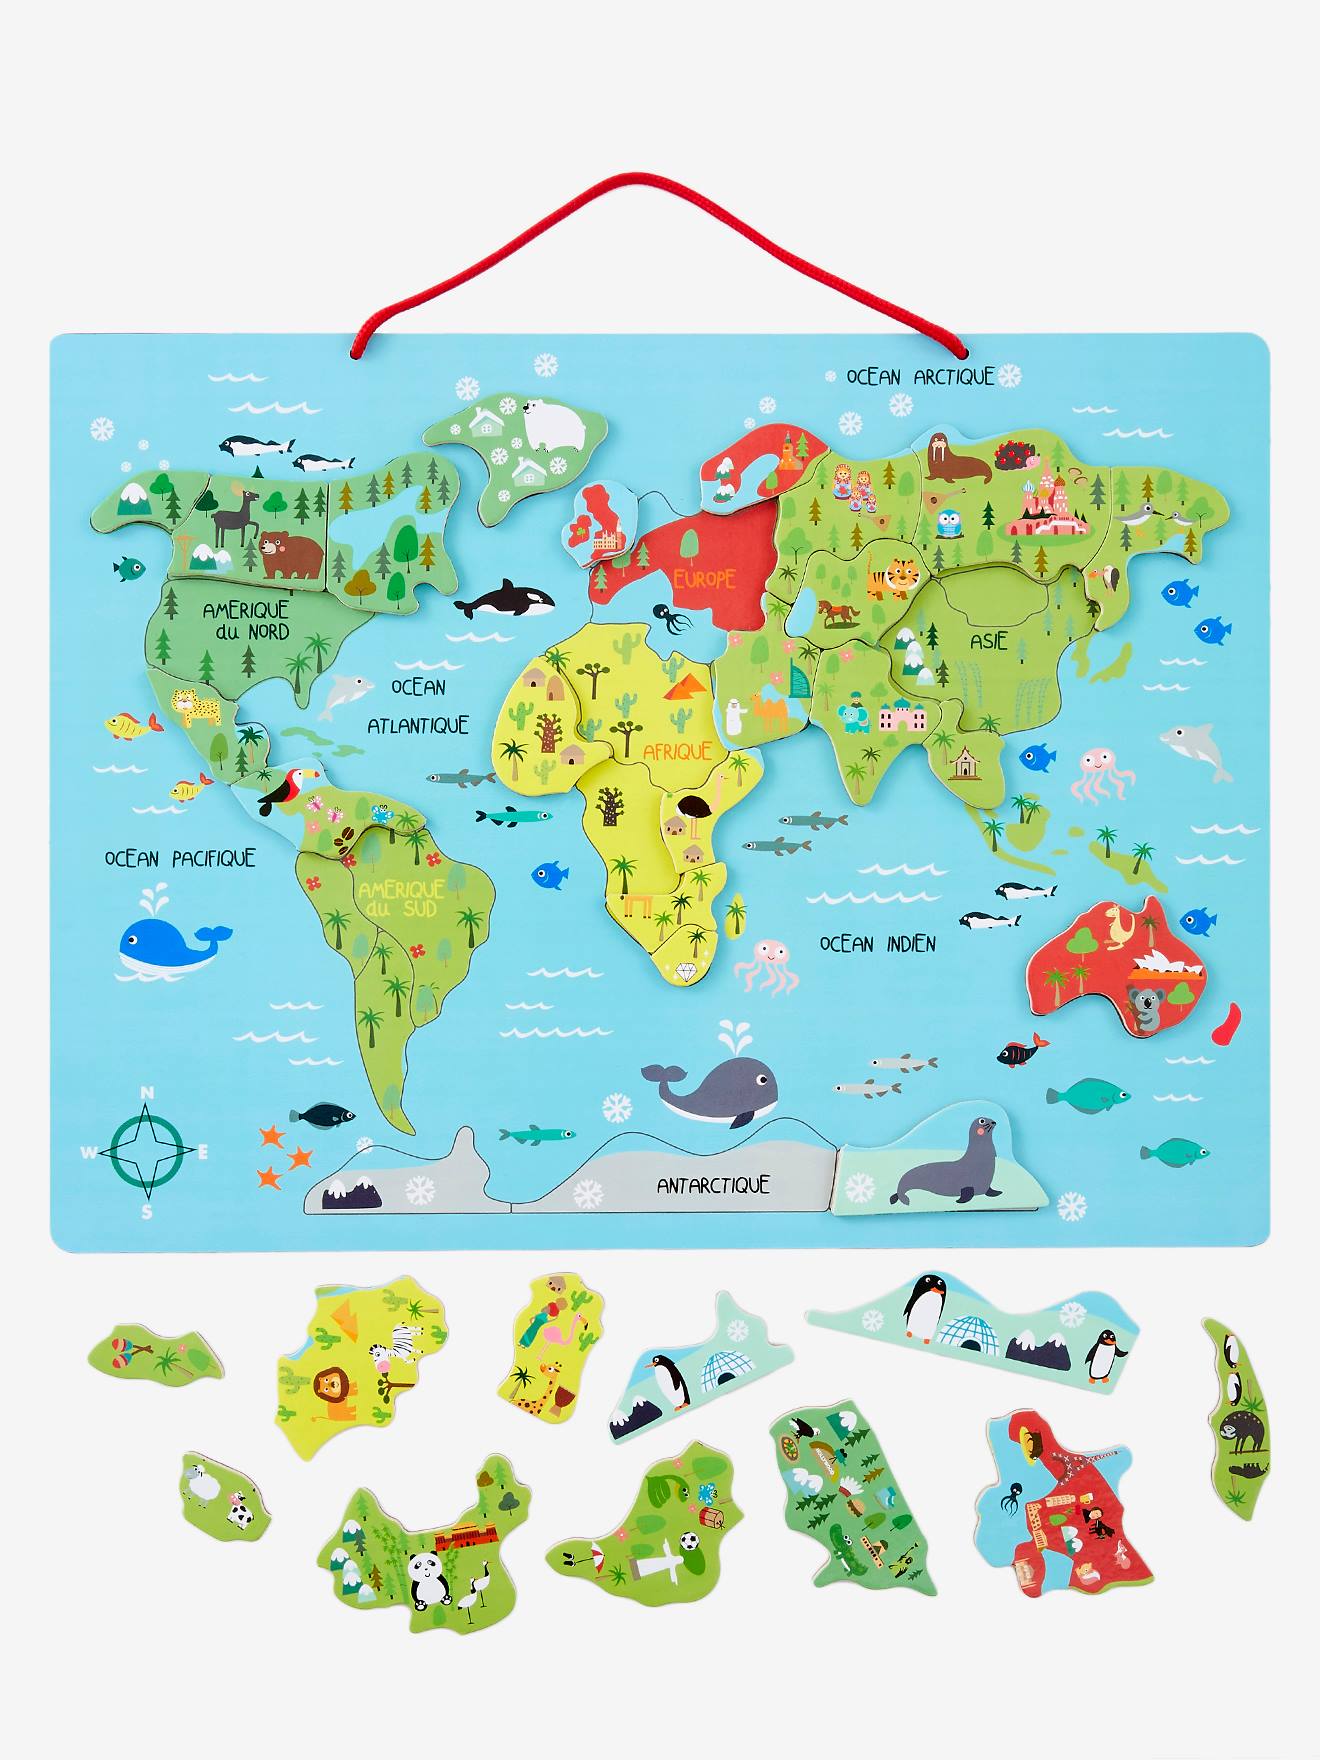 Puzzle cartes du monde pour le bain